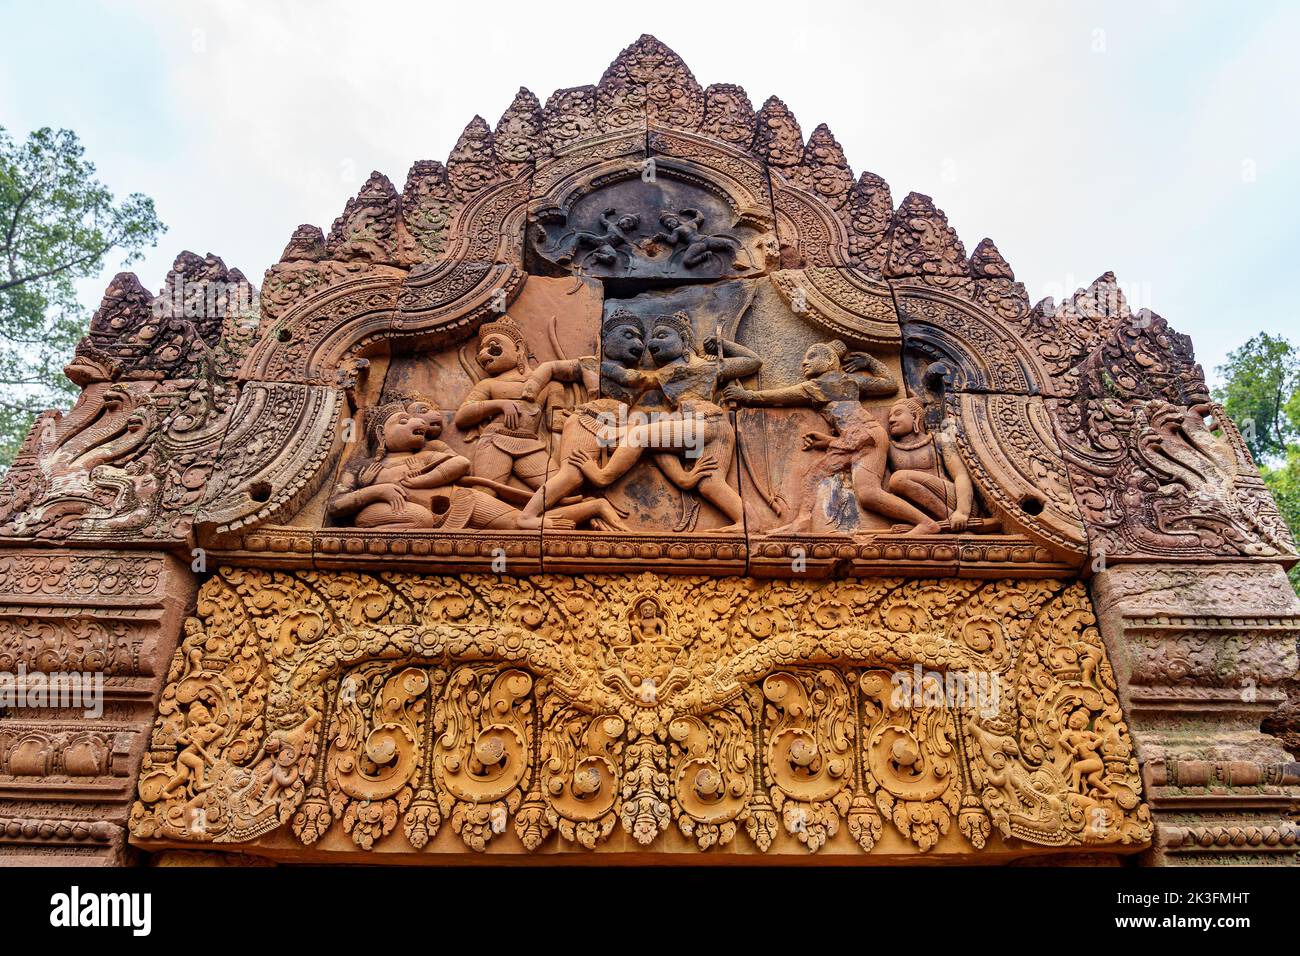 Camboya. Siem Riep. El parque arqueológico de Angkor. Templo Banteay Srei. Detalle de bajorrelieve en el frontón de la entrada al templo Foto de stock